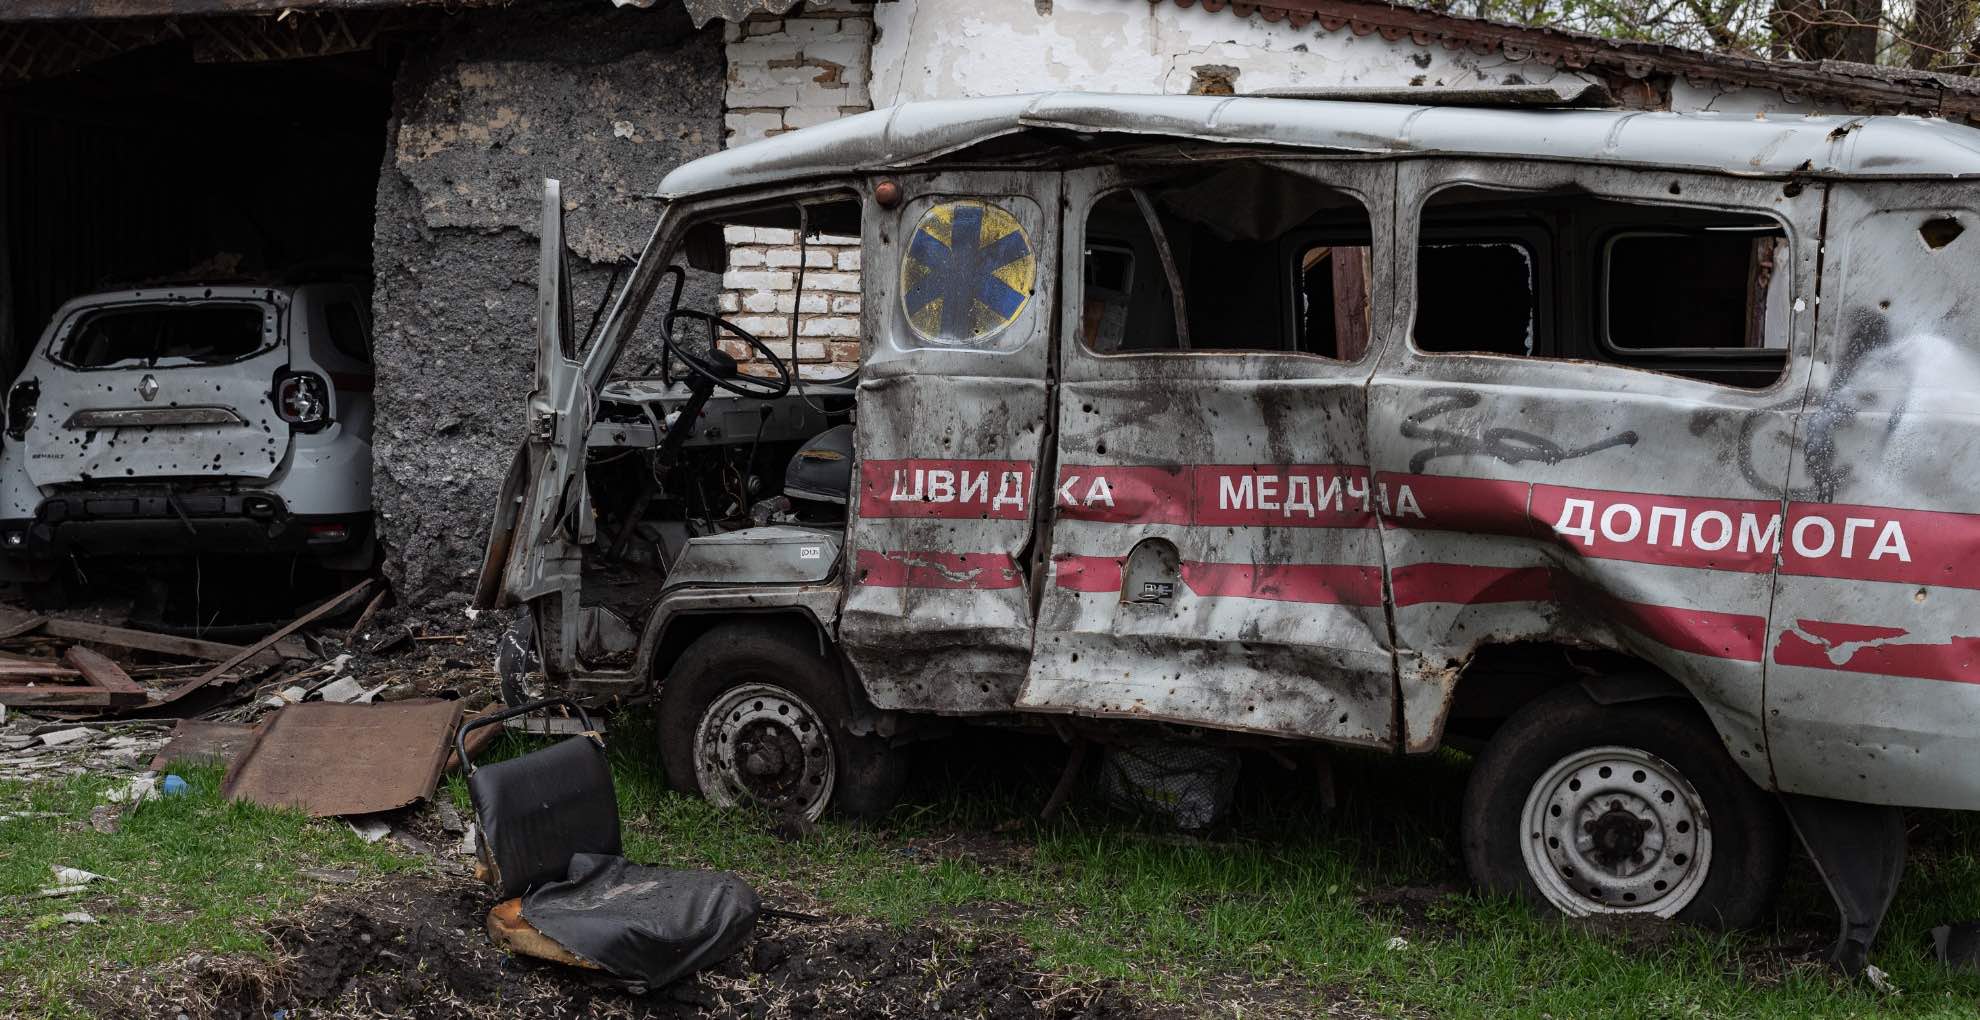 An ambulance was destroyed in Novyi Bykiv, Ukraine.